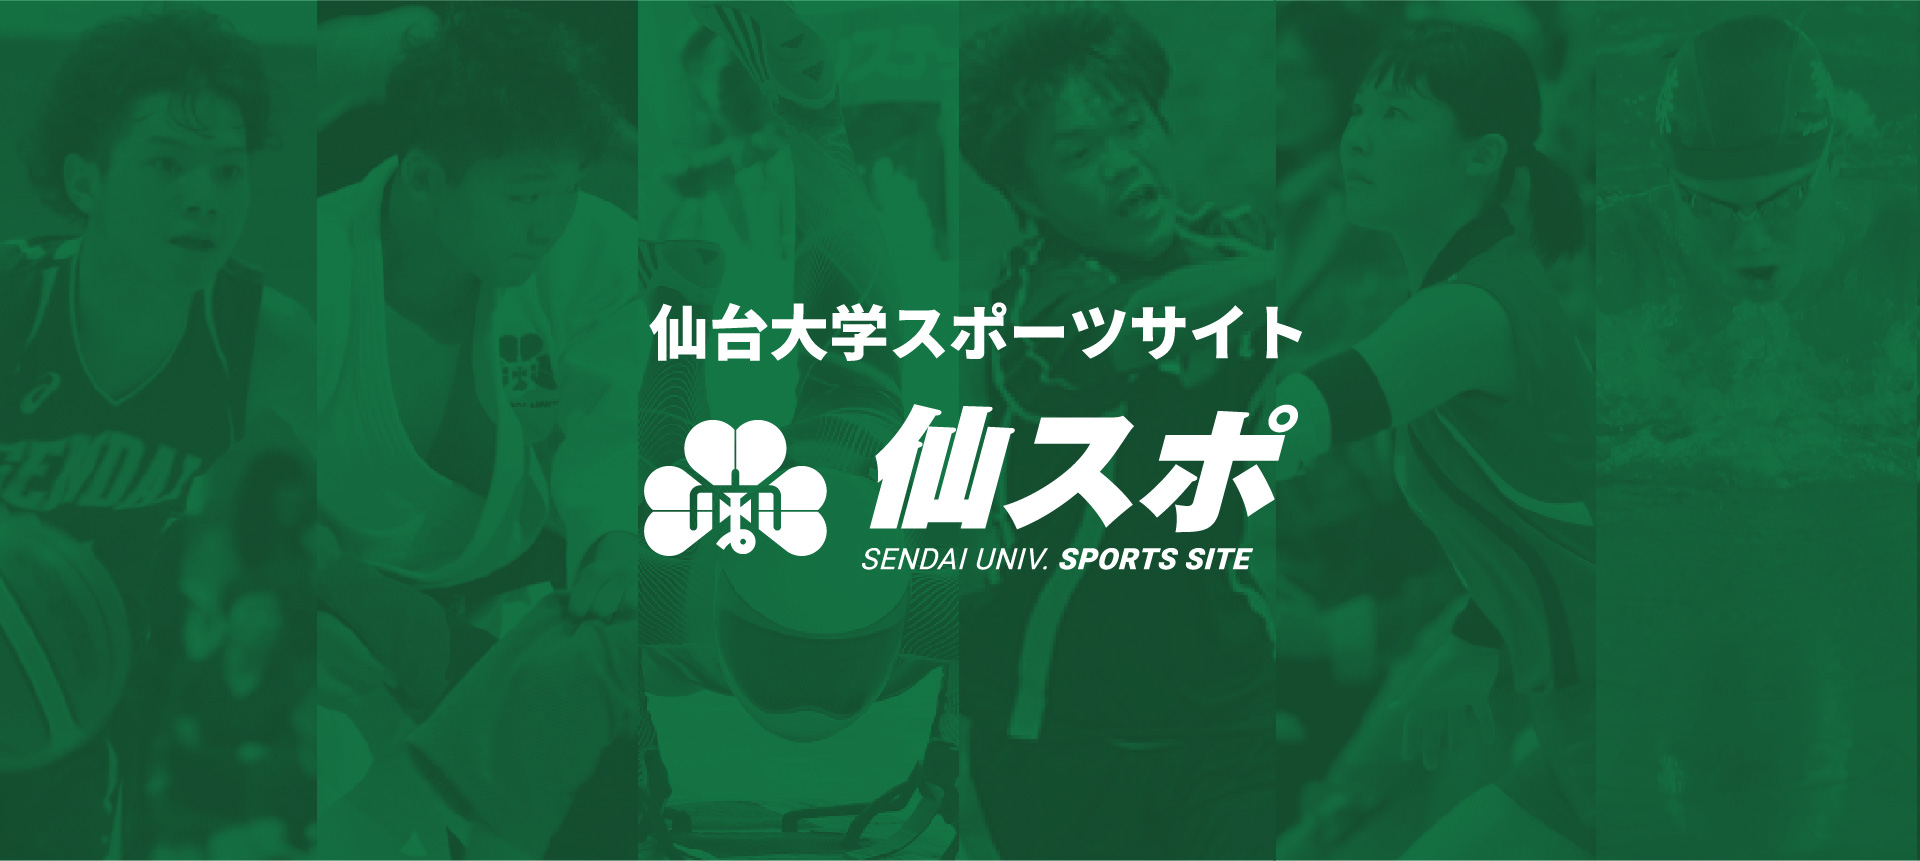 仙台大学スポーツサイト